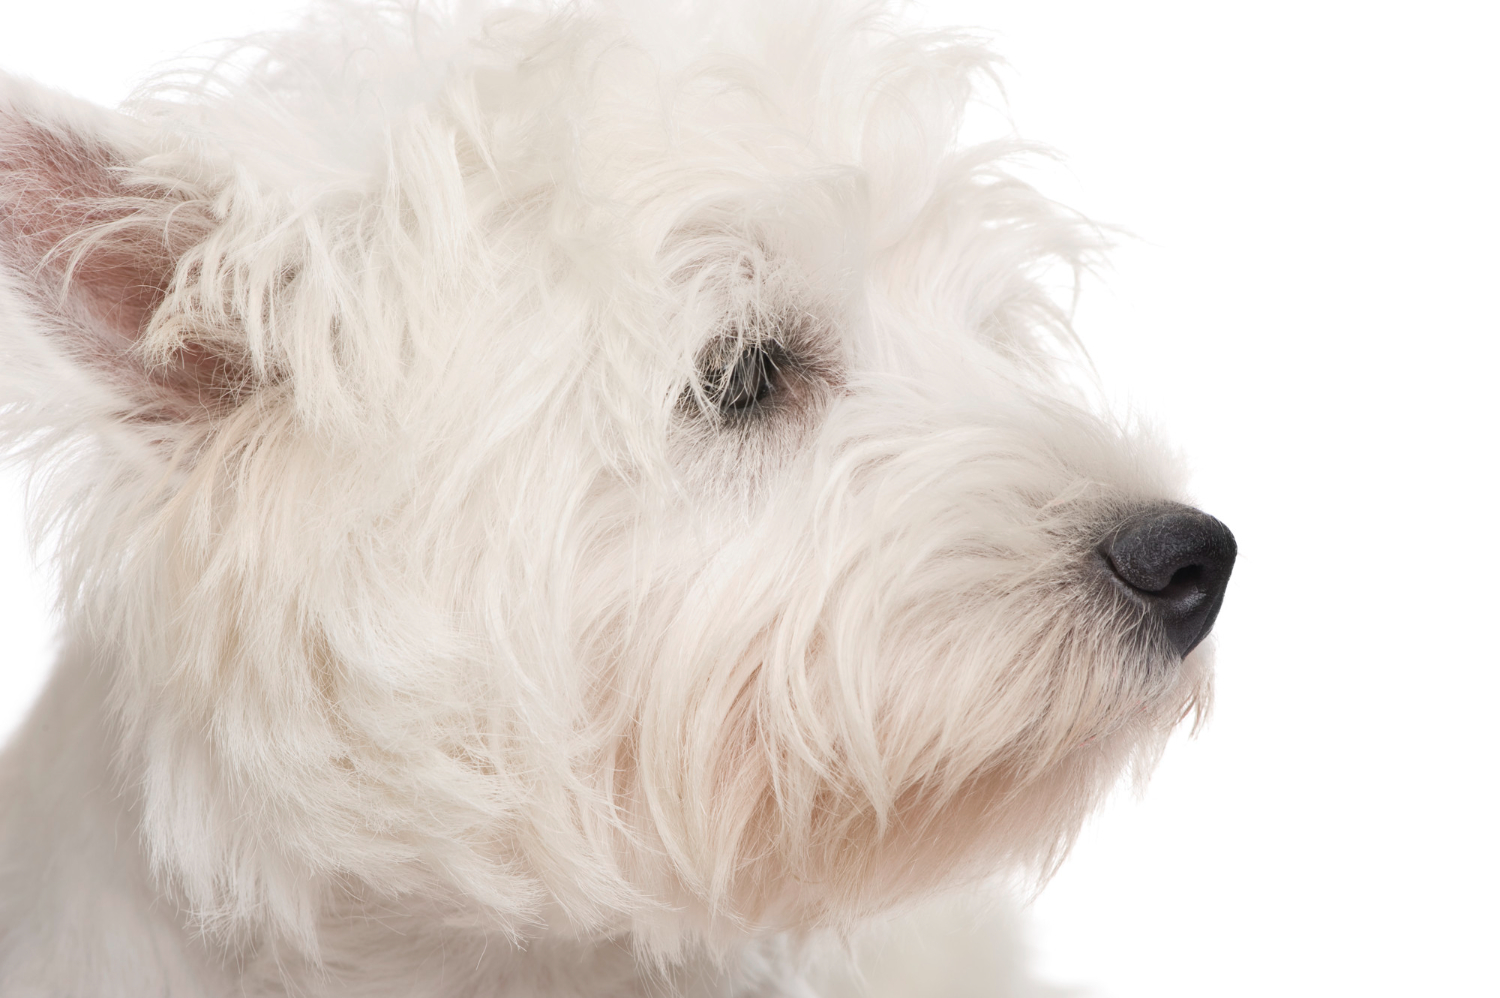 Którą rasę wybrać - west highland white terrier czy maltańczyk